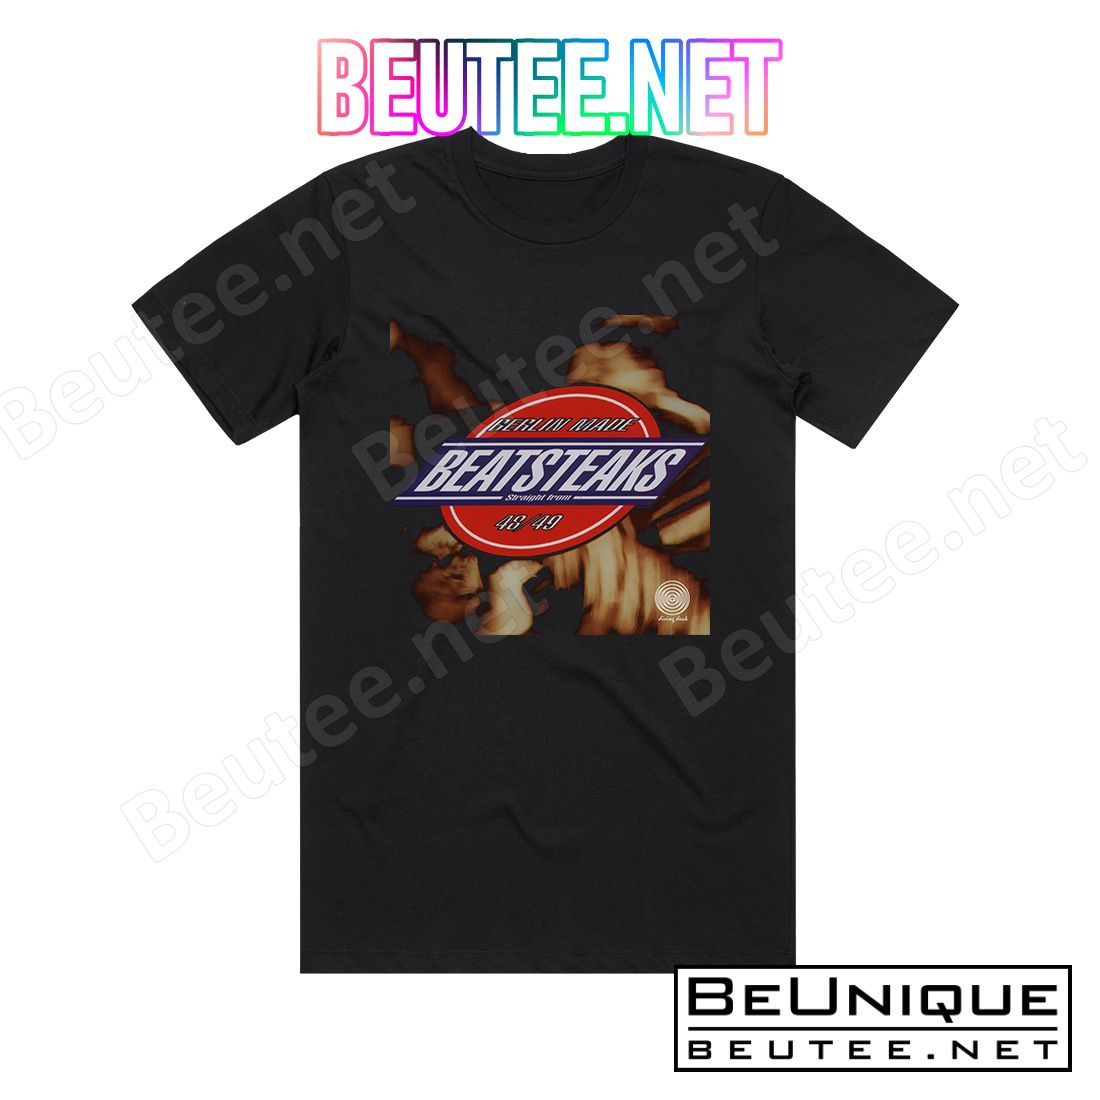 Beatsteaks 4849 Album Cover T-Shirt